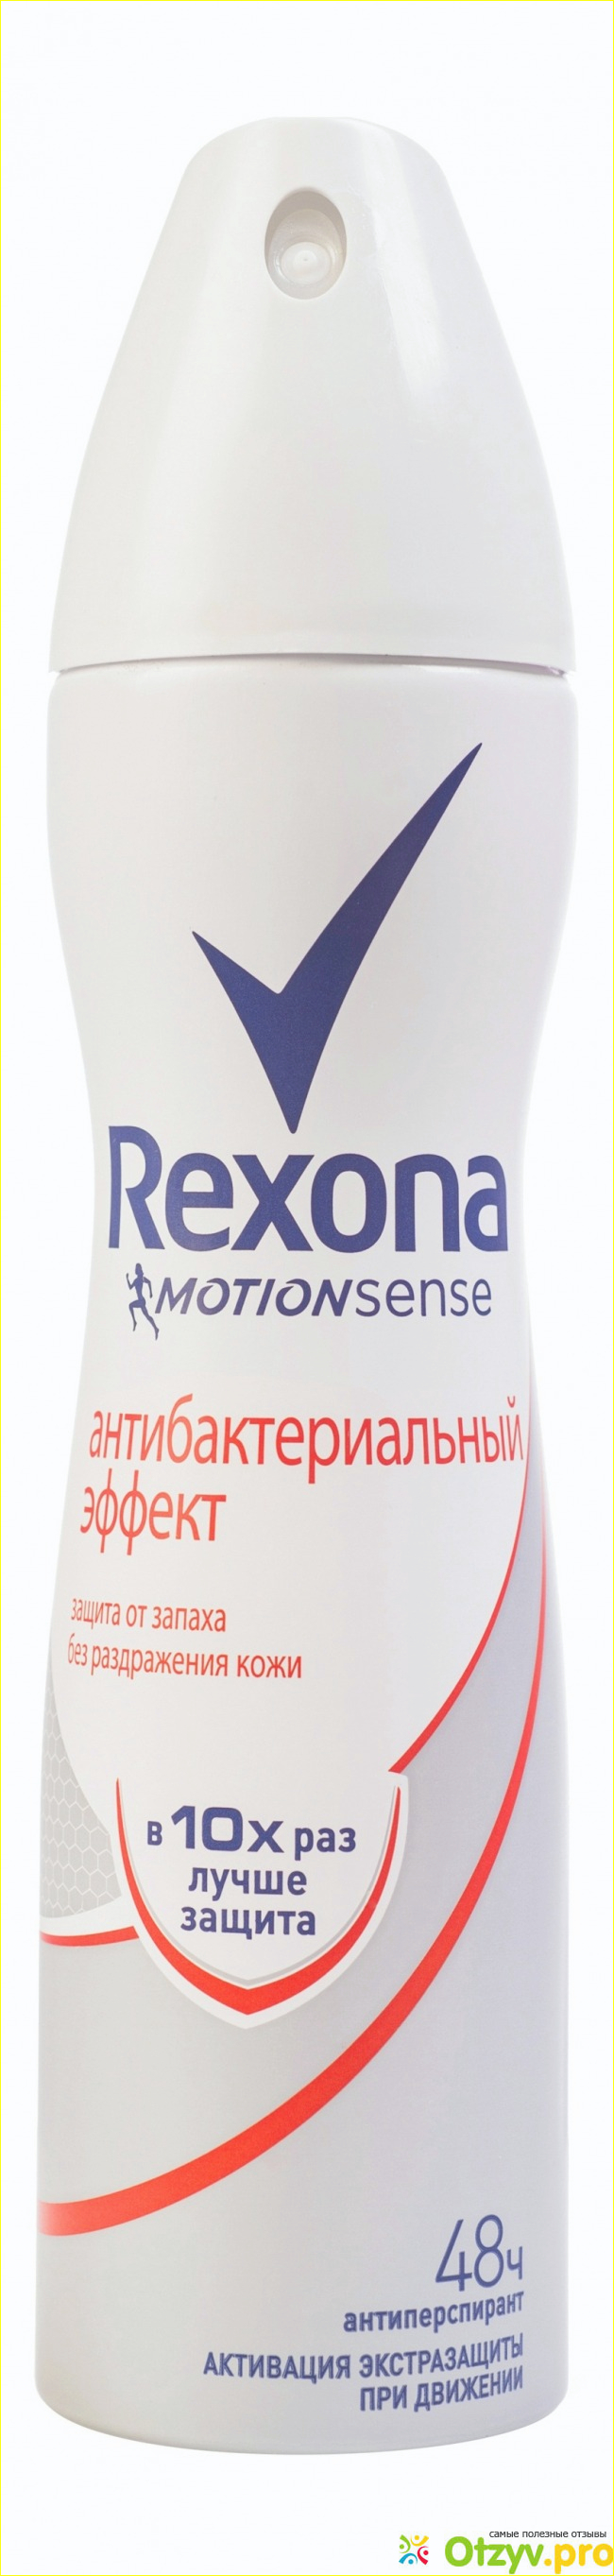 Rexona motionsense антибактериальный эффект. 